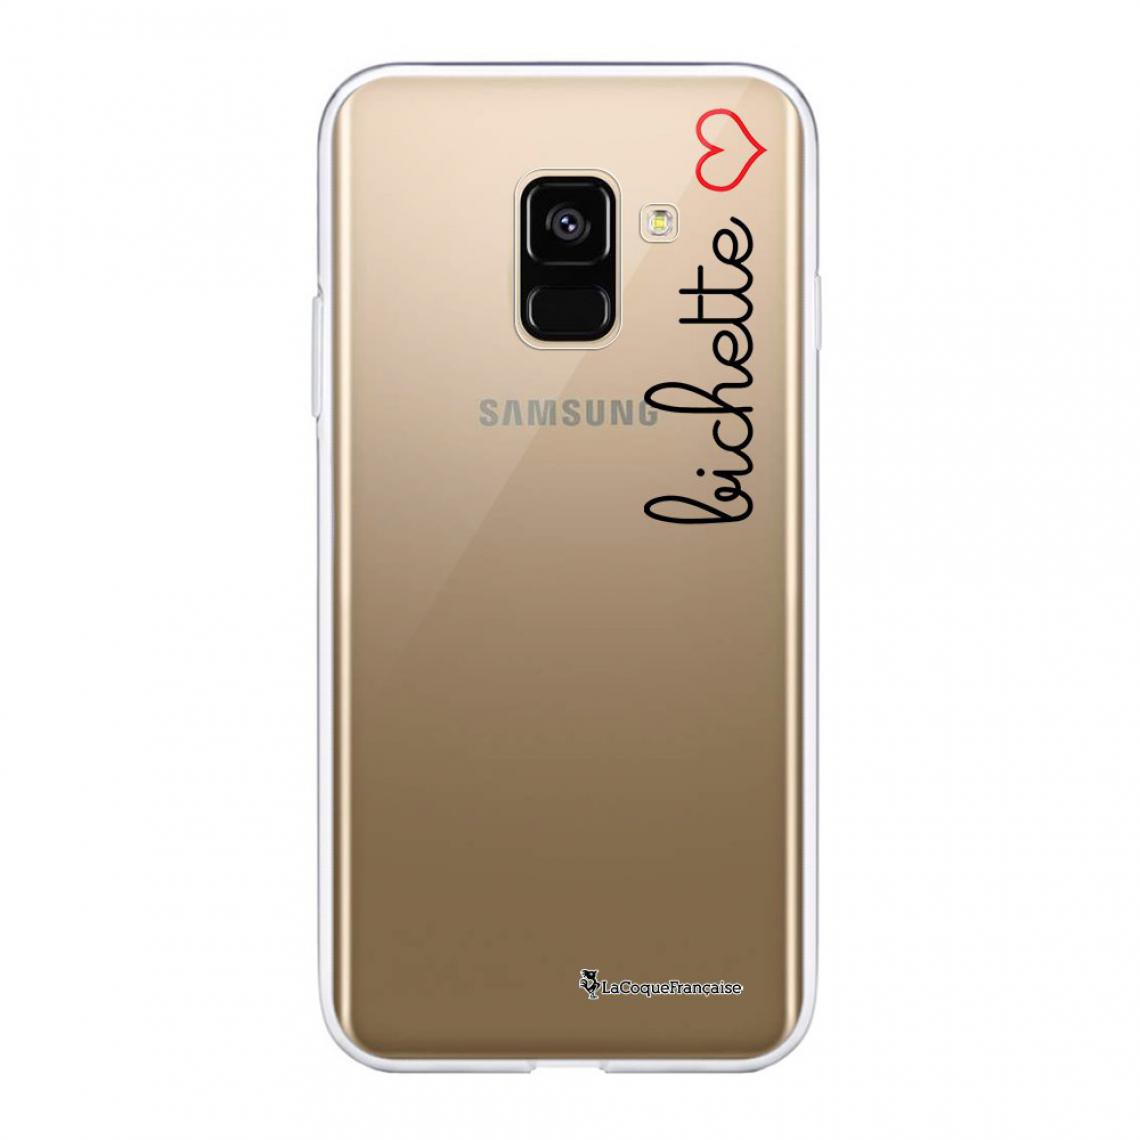 La Coque Francaise - Coque Samsung Galaxy A8 2018 360 intégrale avant arrière - Coque, étui smartphone